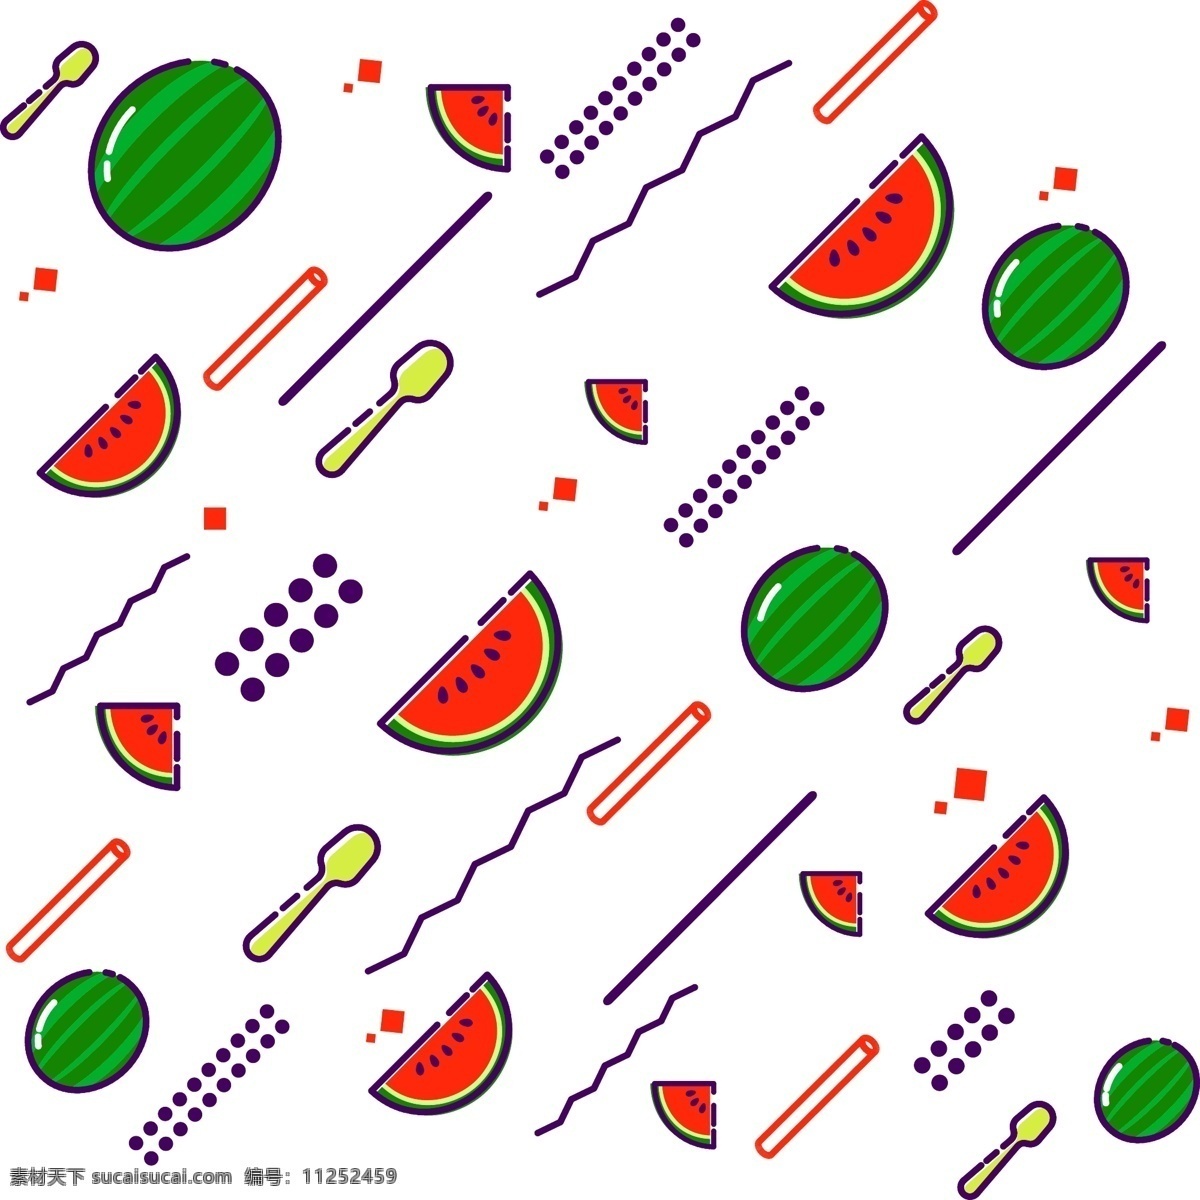 漂浮 元素 水果 西瓜 mbe 风格 彩色 原创 食物 餐具 卡通 可爱 动感 果蔬 勺子 多彩 矢量 射线 线段 点线面 不规则